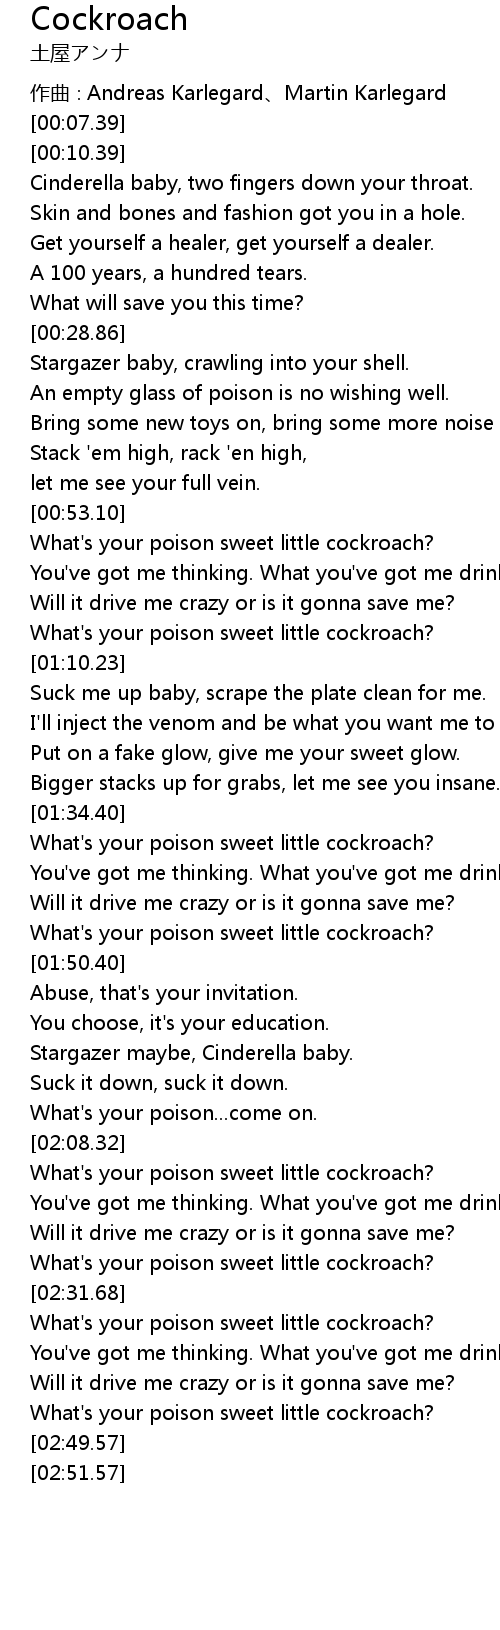 Cockroach Lyrics Follow Lyrics